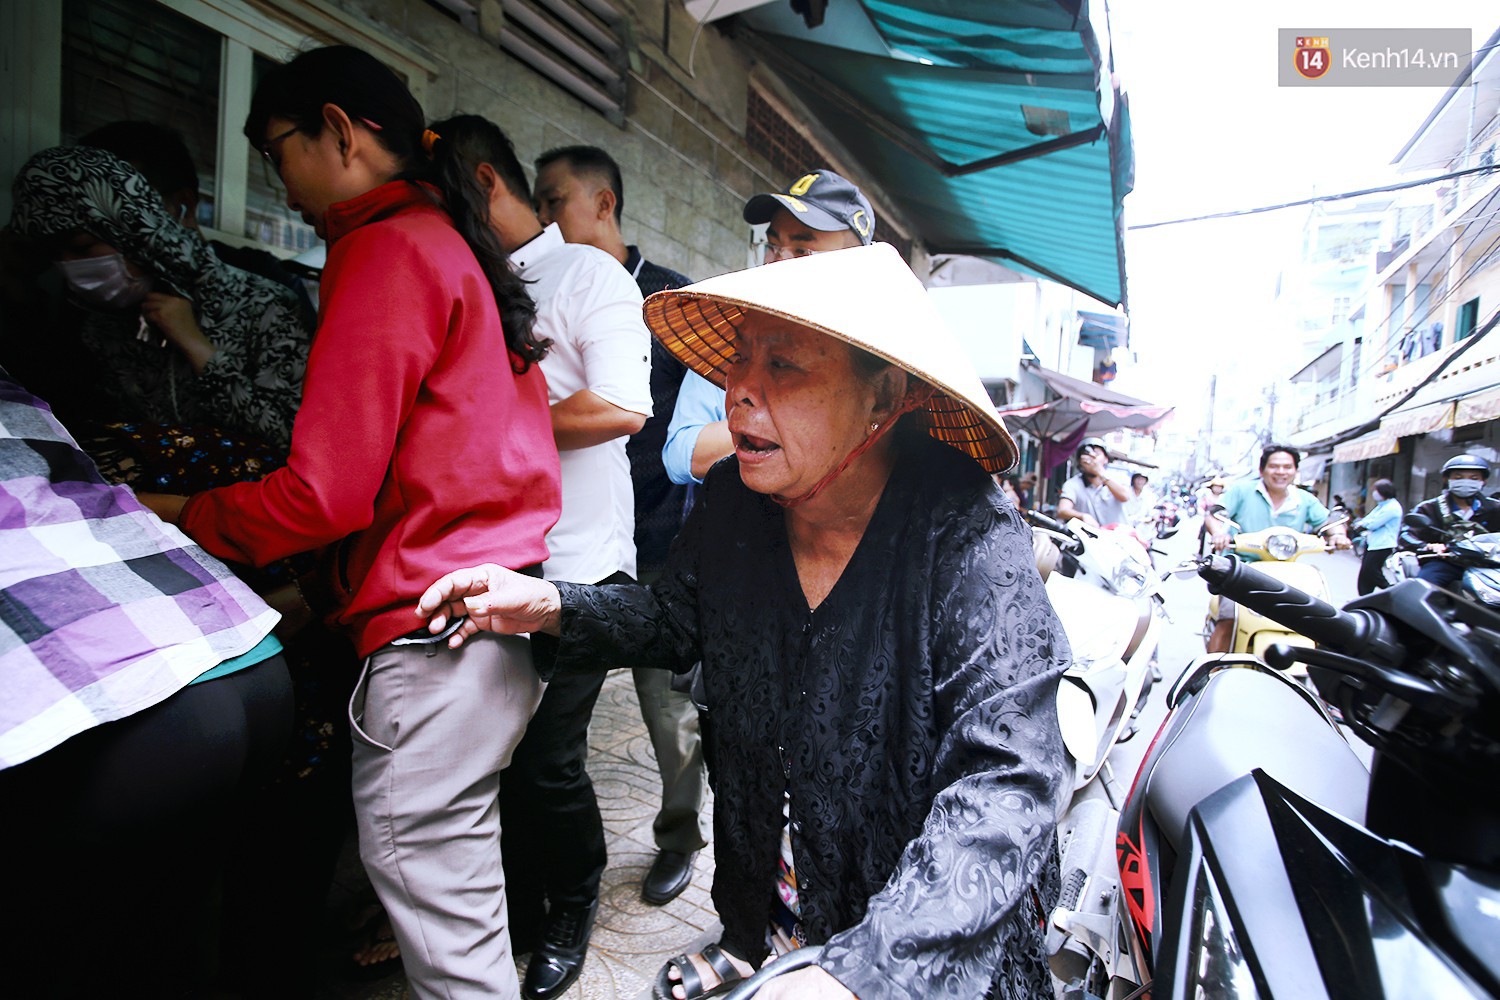 Cận cảnh người Sài Gòn chờ hàng giờ đồng hồ, tranh mua mâm cua dì Ba chỉ bán 10 phút là hết sạch - Ảnh 7.